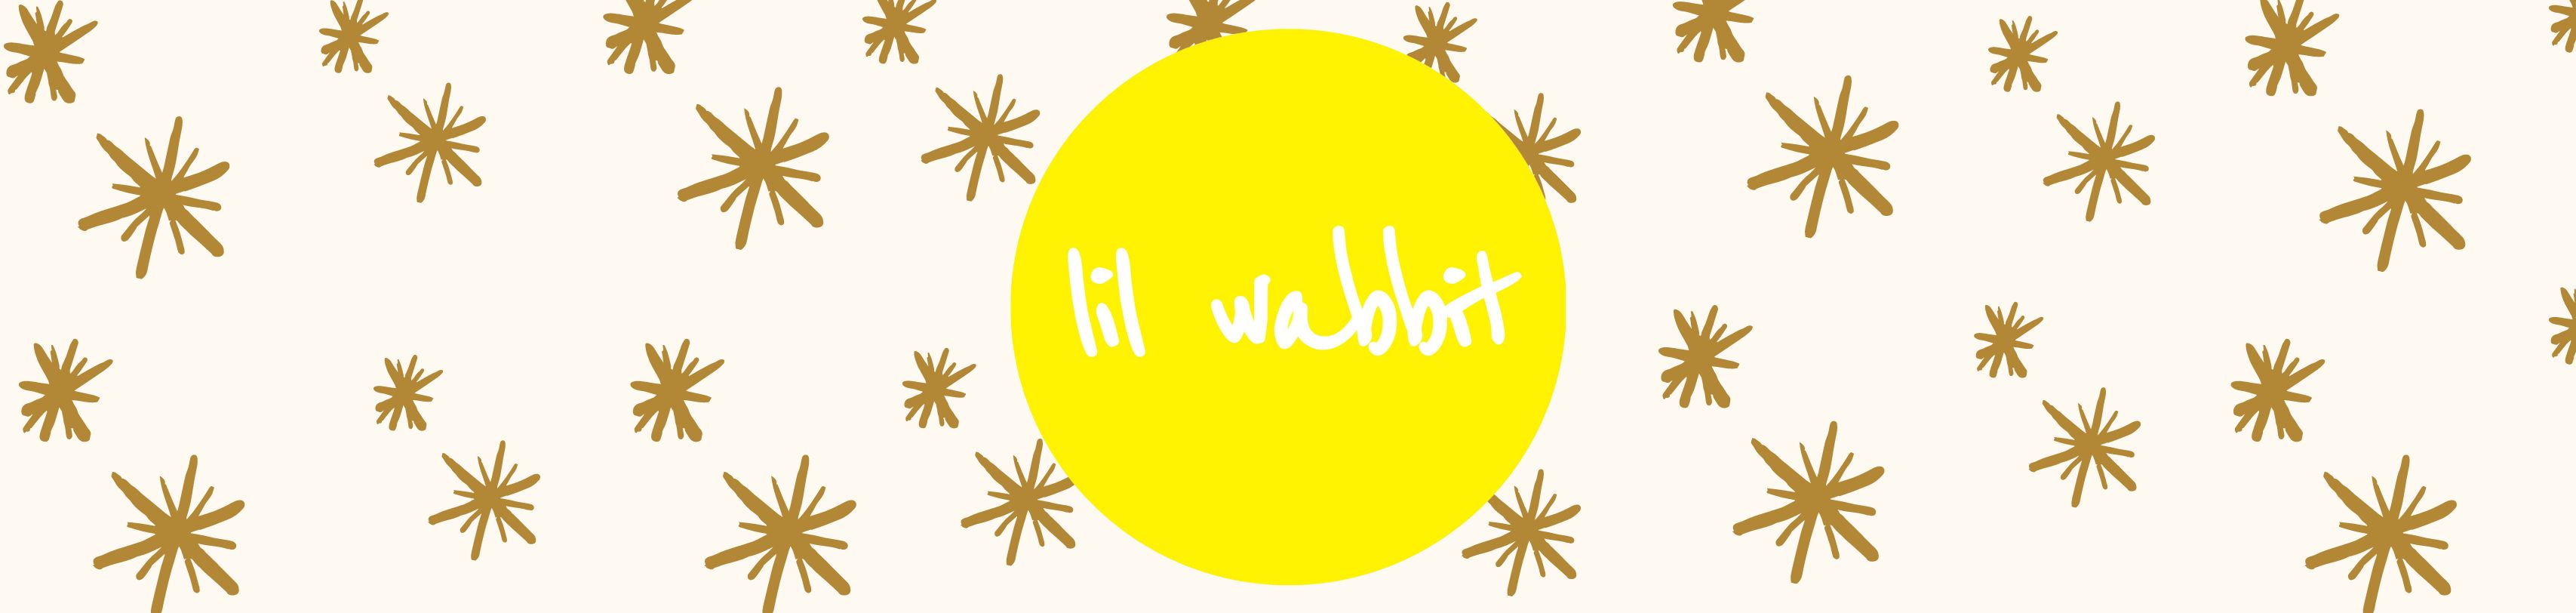 Lil Wabbit